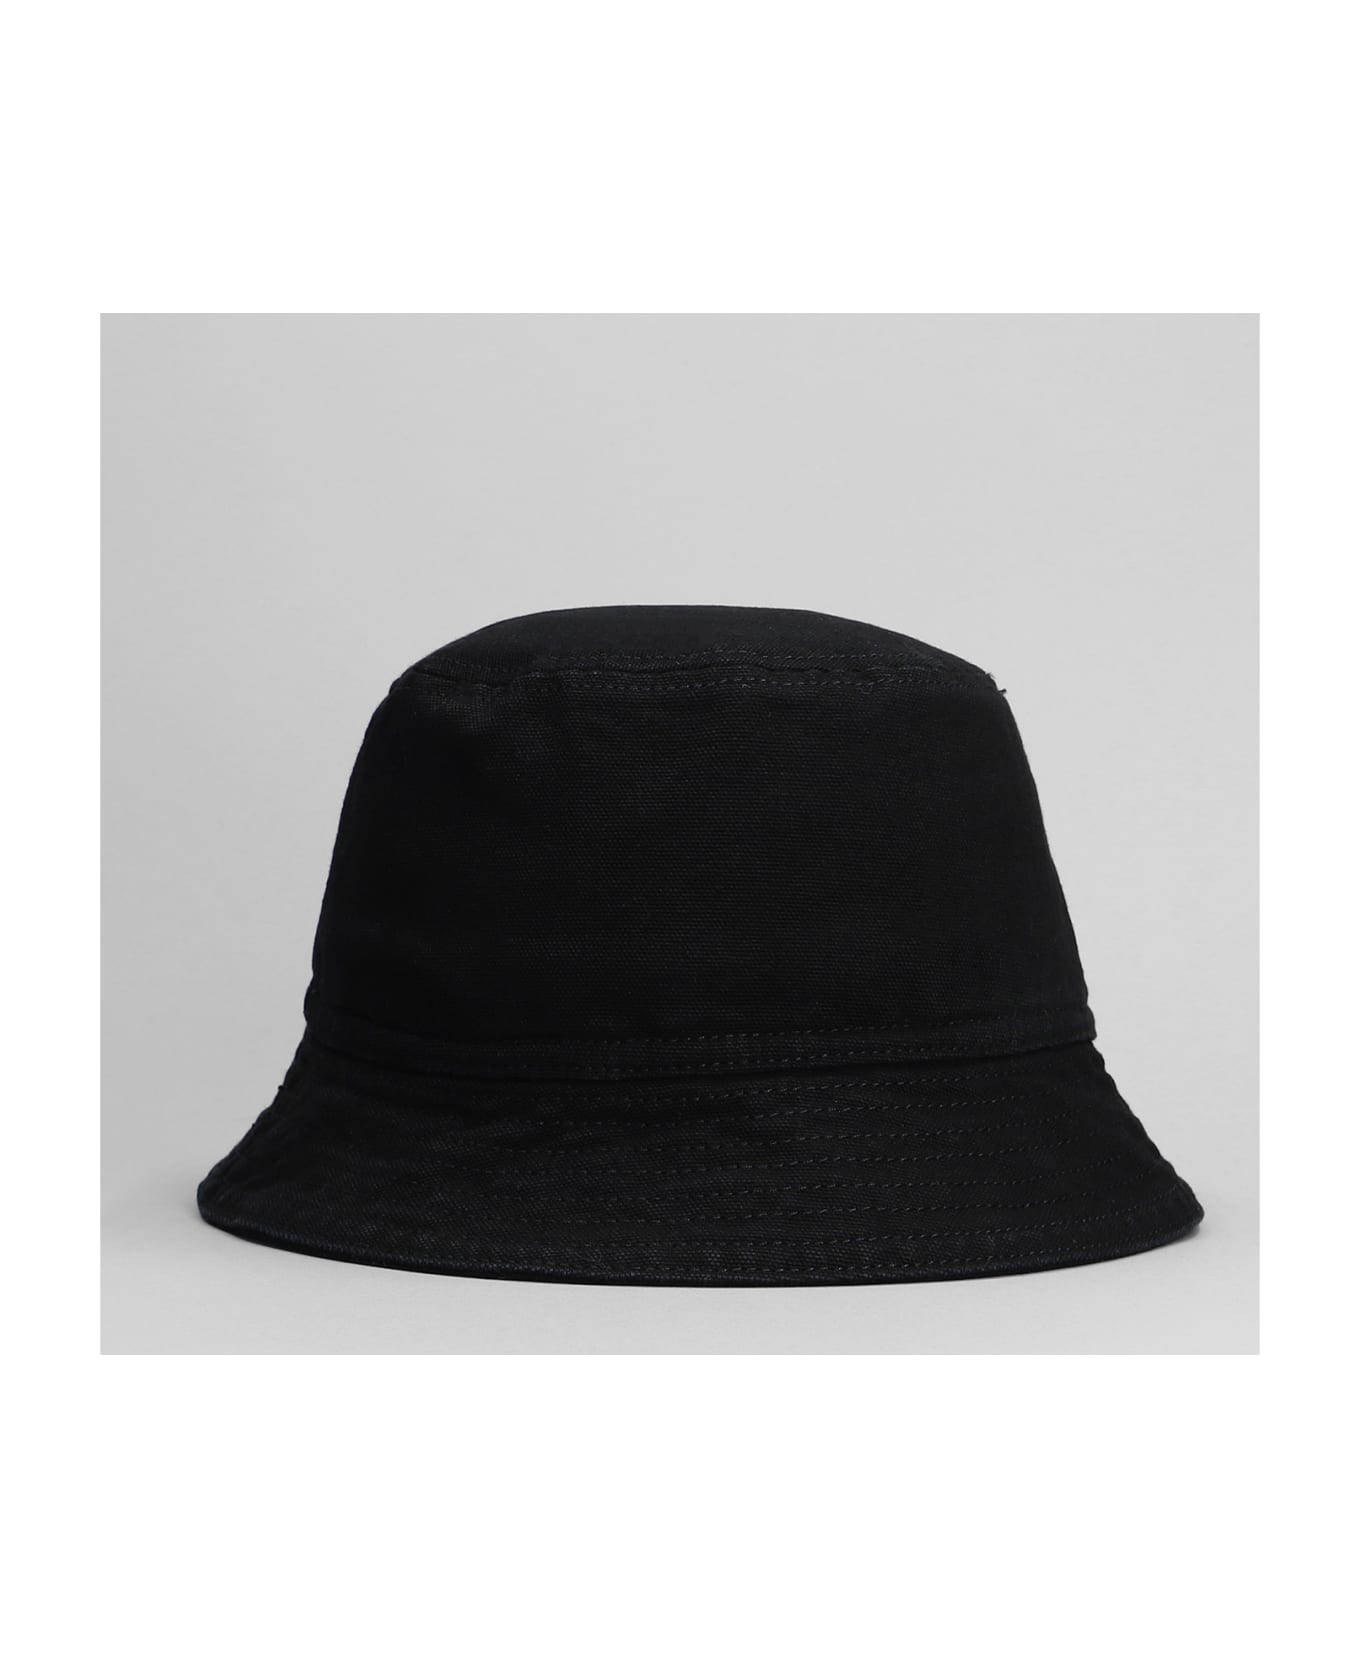 Carhartt Black Cotton Bayfield Bucket Hat - BLK